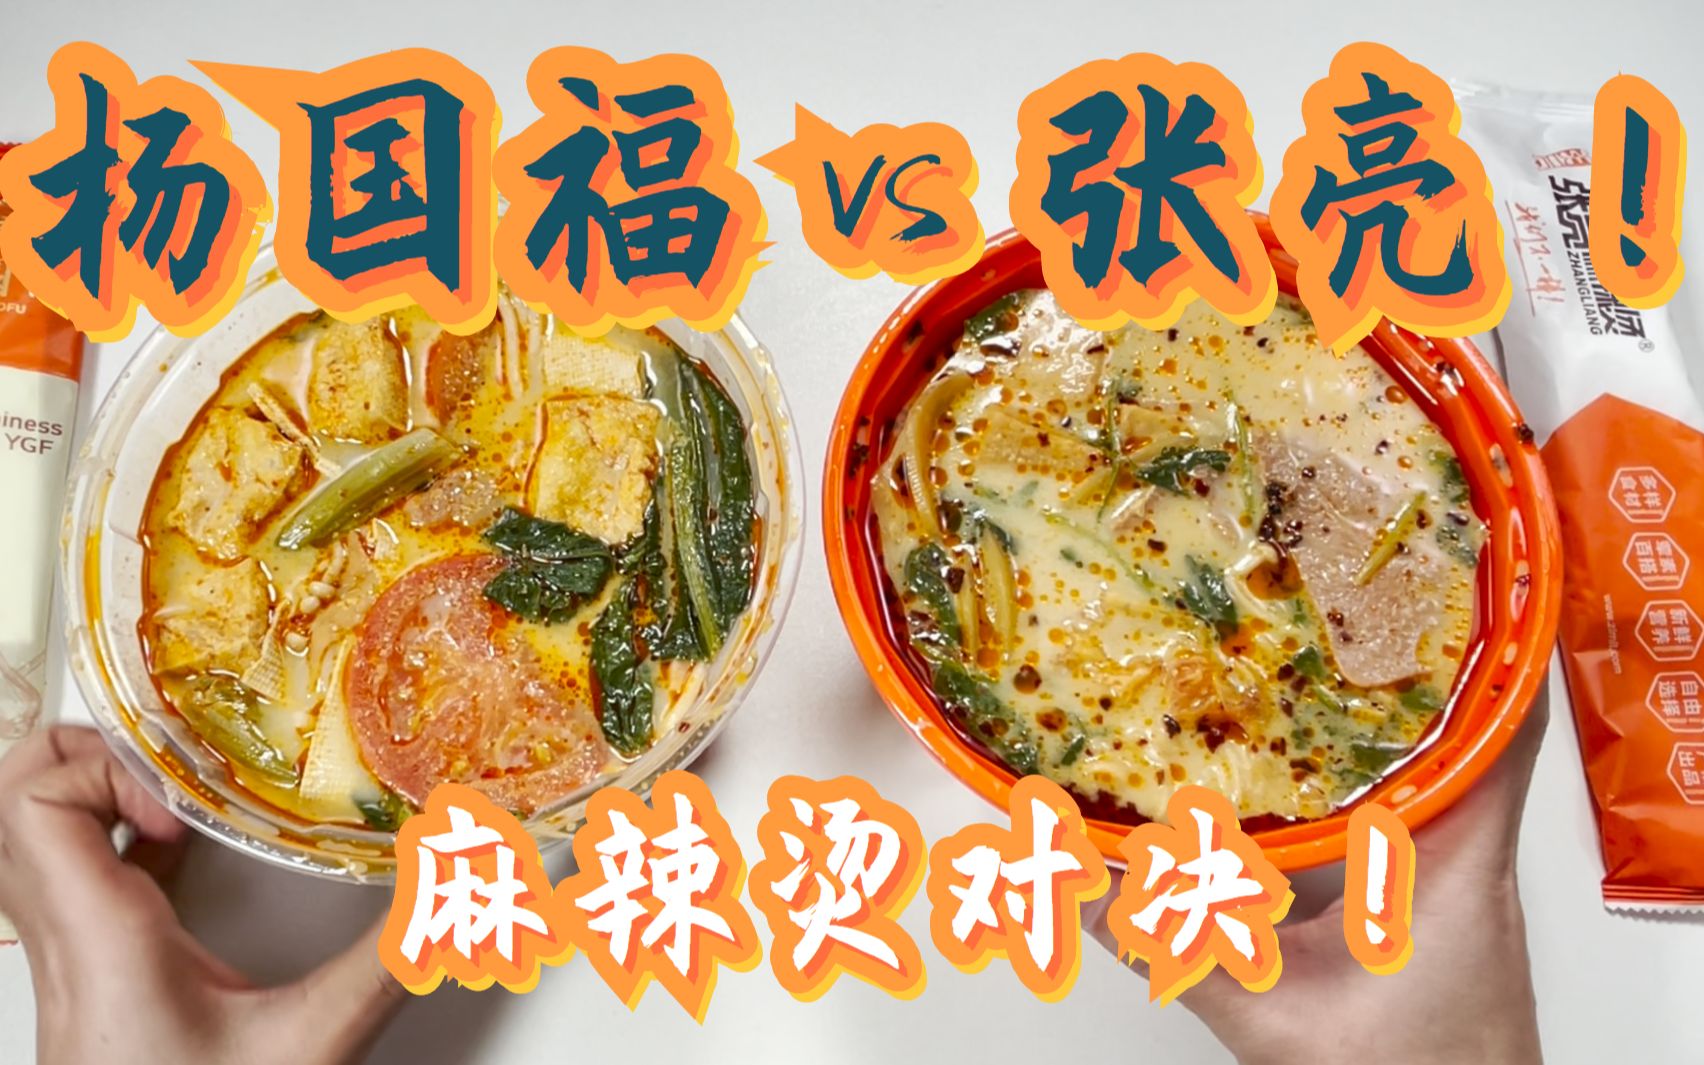 杨国福VS张亮麻辣烫经典套餐！哪个更好吃？哪个更实惠呢？